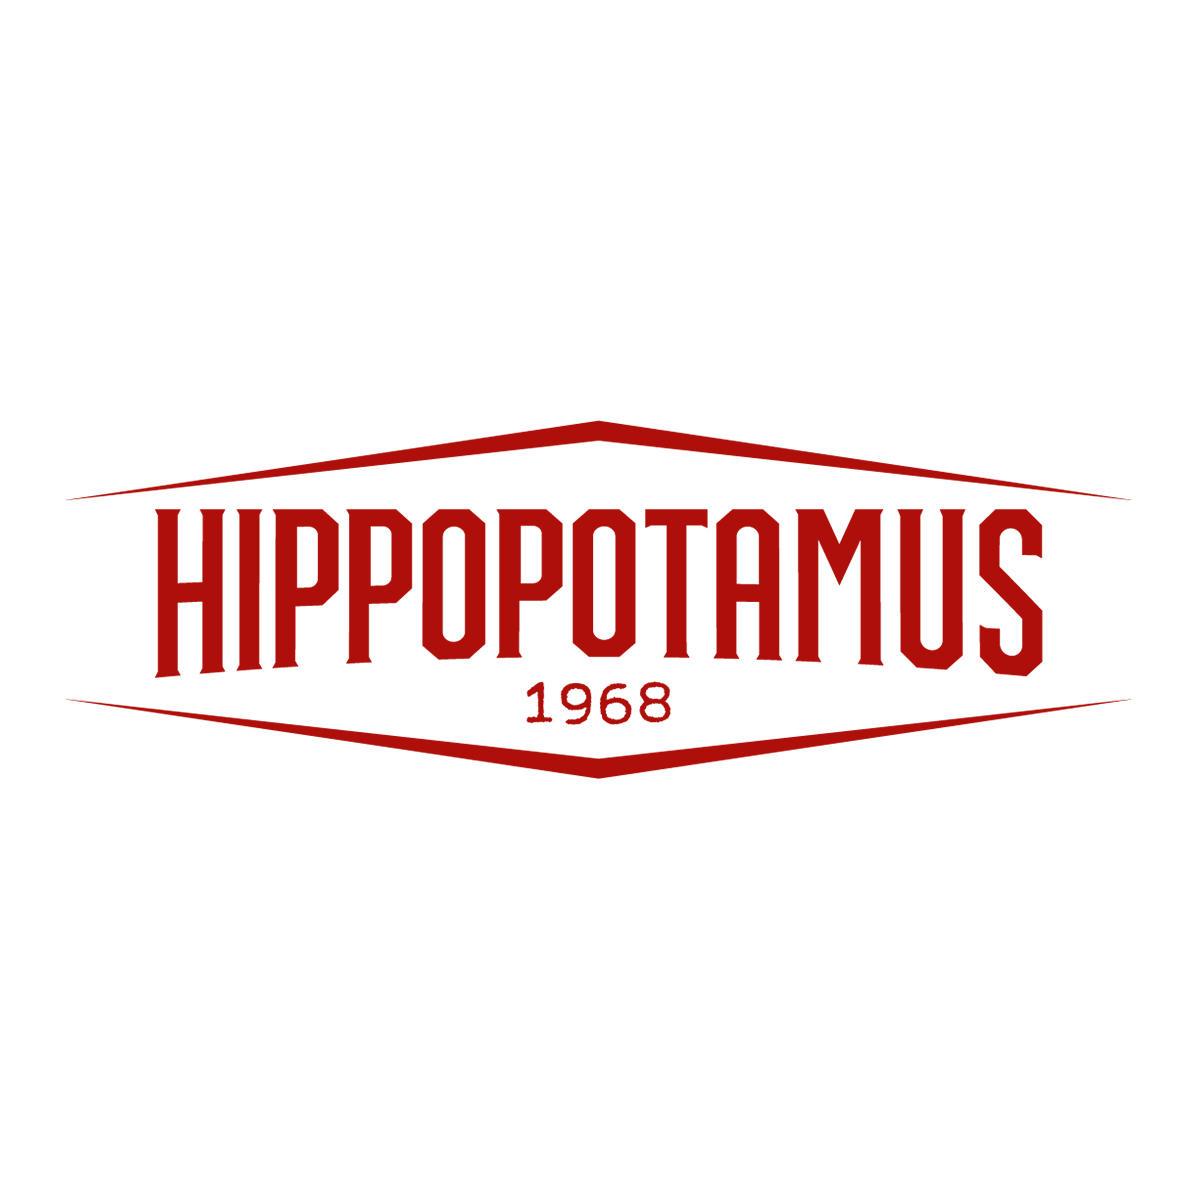 Hippopotamus Steakhouse Coudekerque Branche